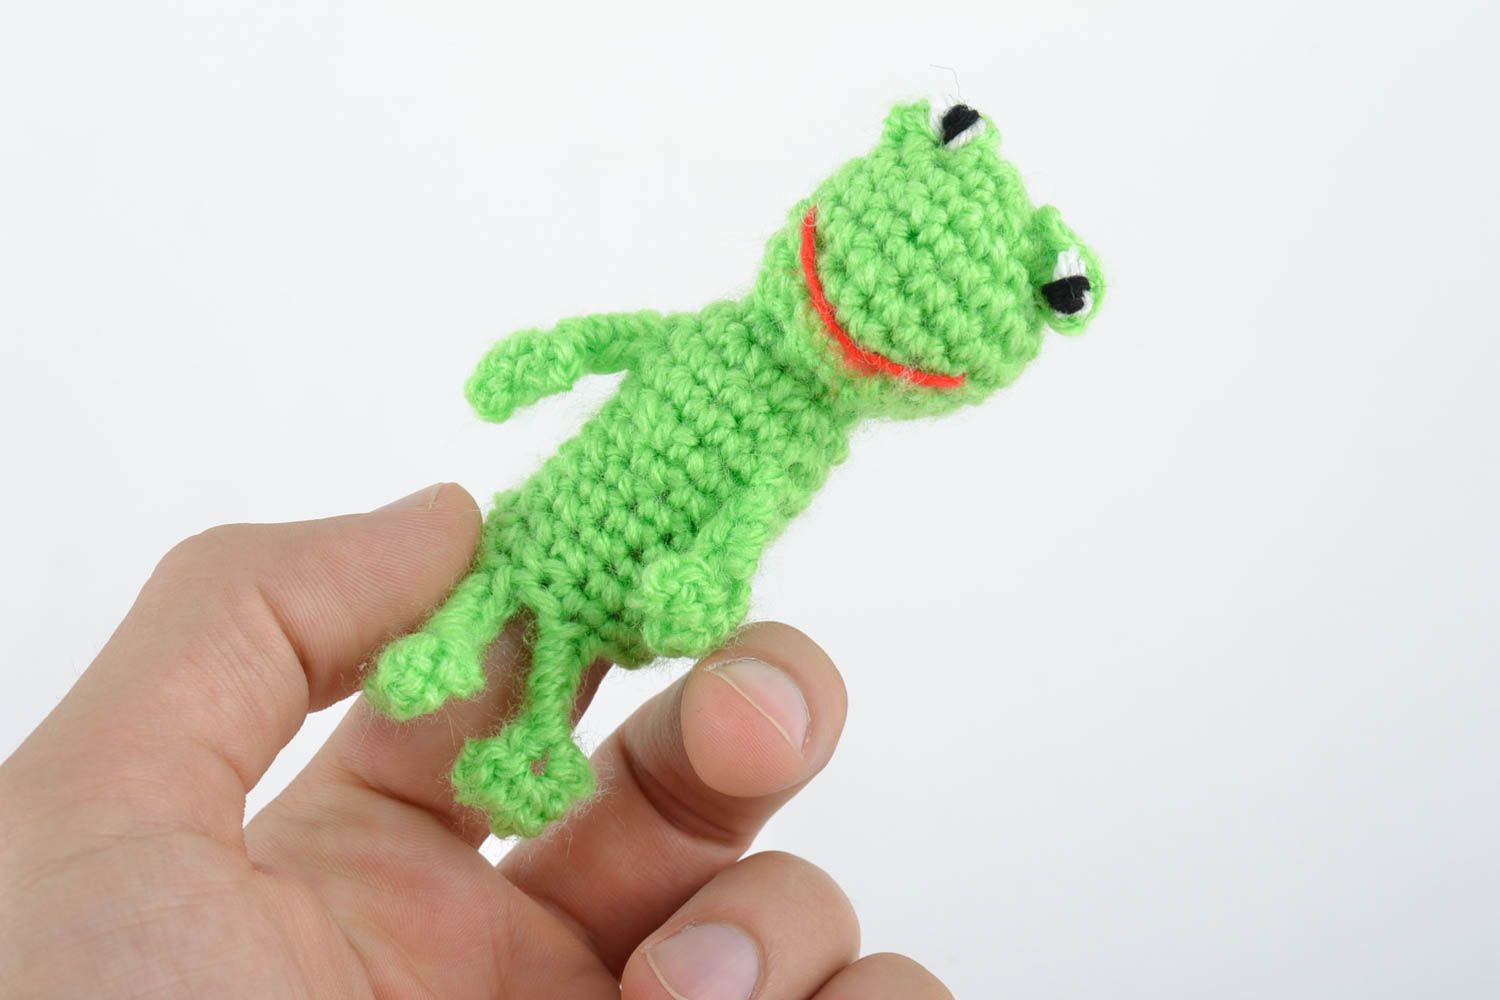 Textil Fingerpuppe Frosch in Grün aus Baumwolle und Wolle gehäkelt handmade foto 2